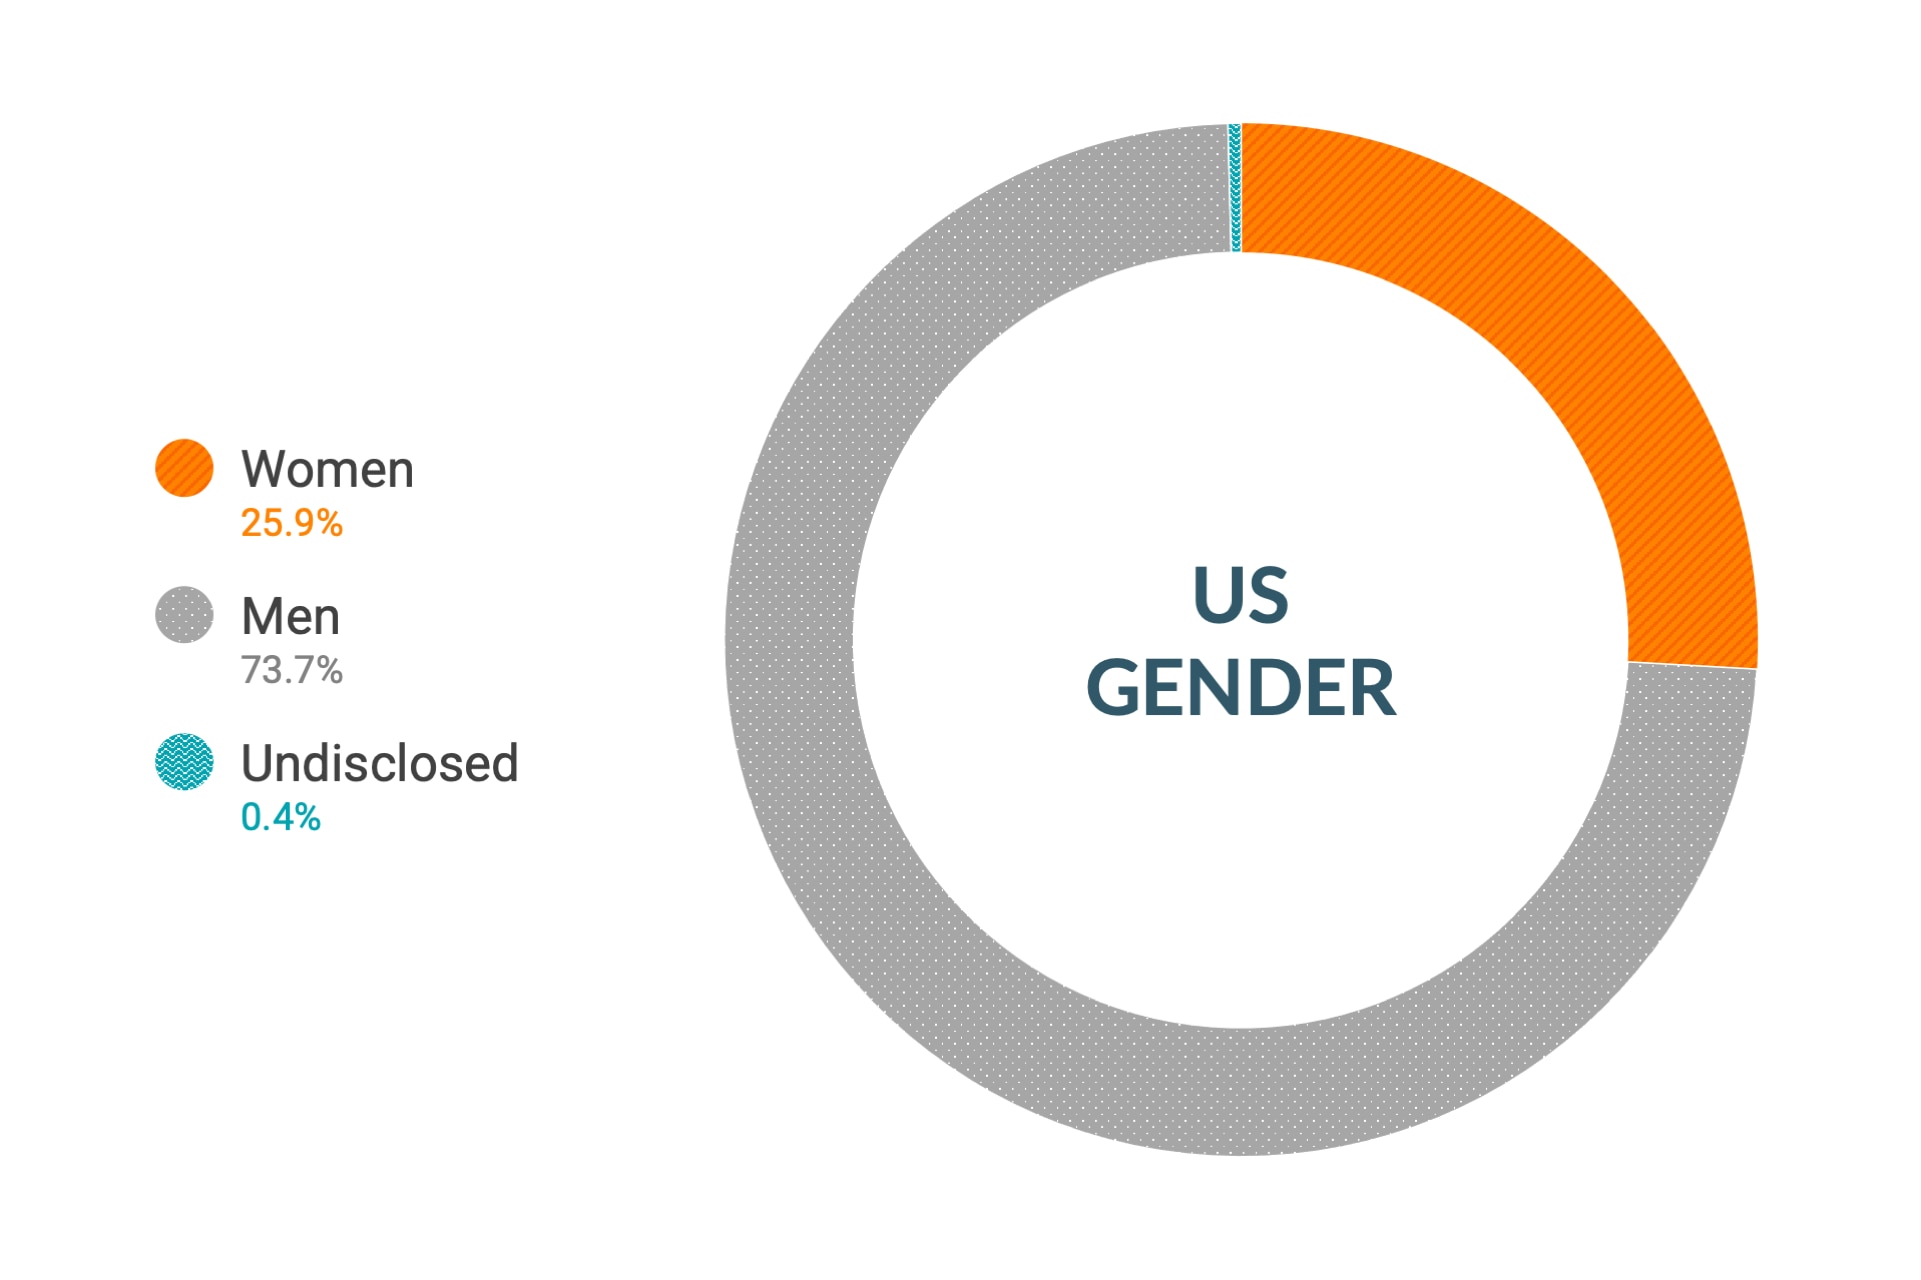 Dane firmy Cloudera dotyczące różnorodności i integracji dla płci w Stanach Zjednoczonych: kobiety 26,6%, mężczyźni 72,9%, nieujawnione 0,5%